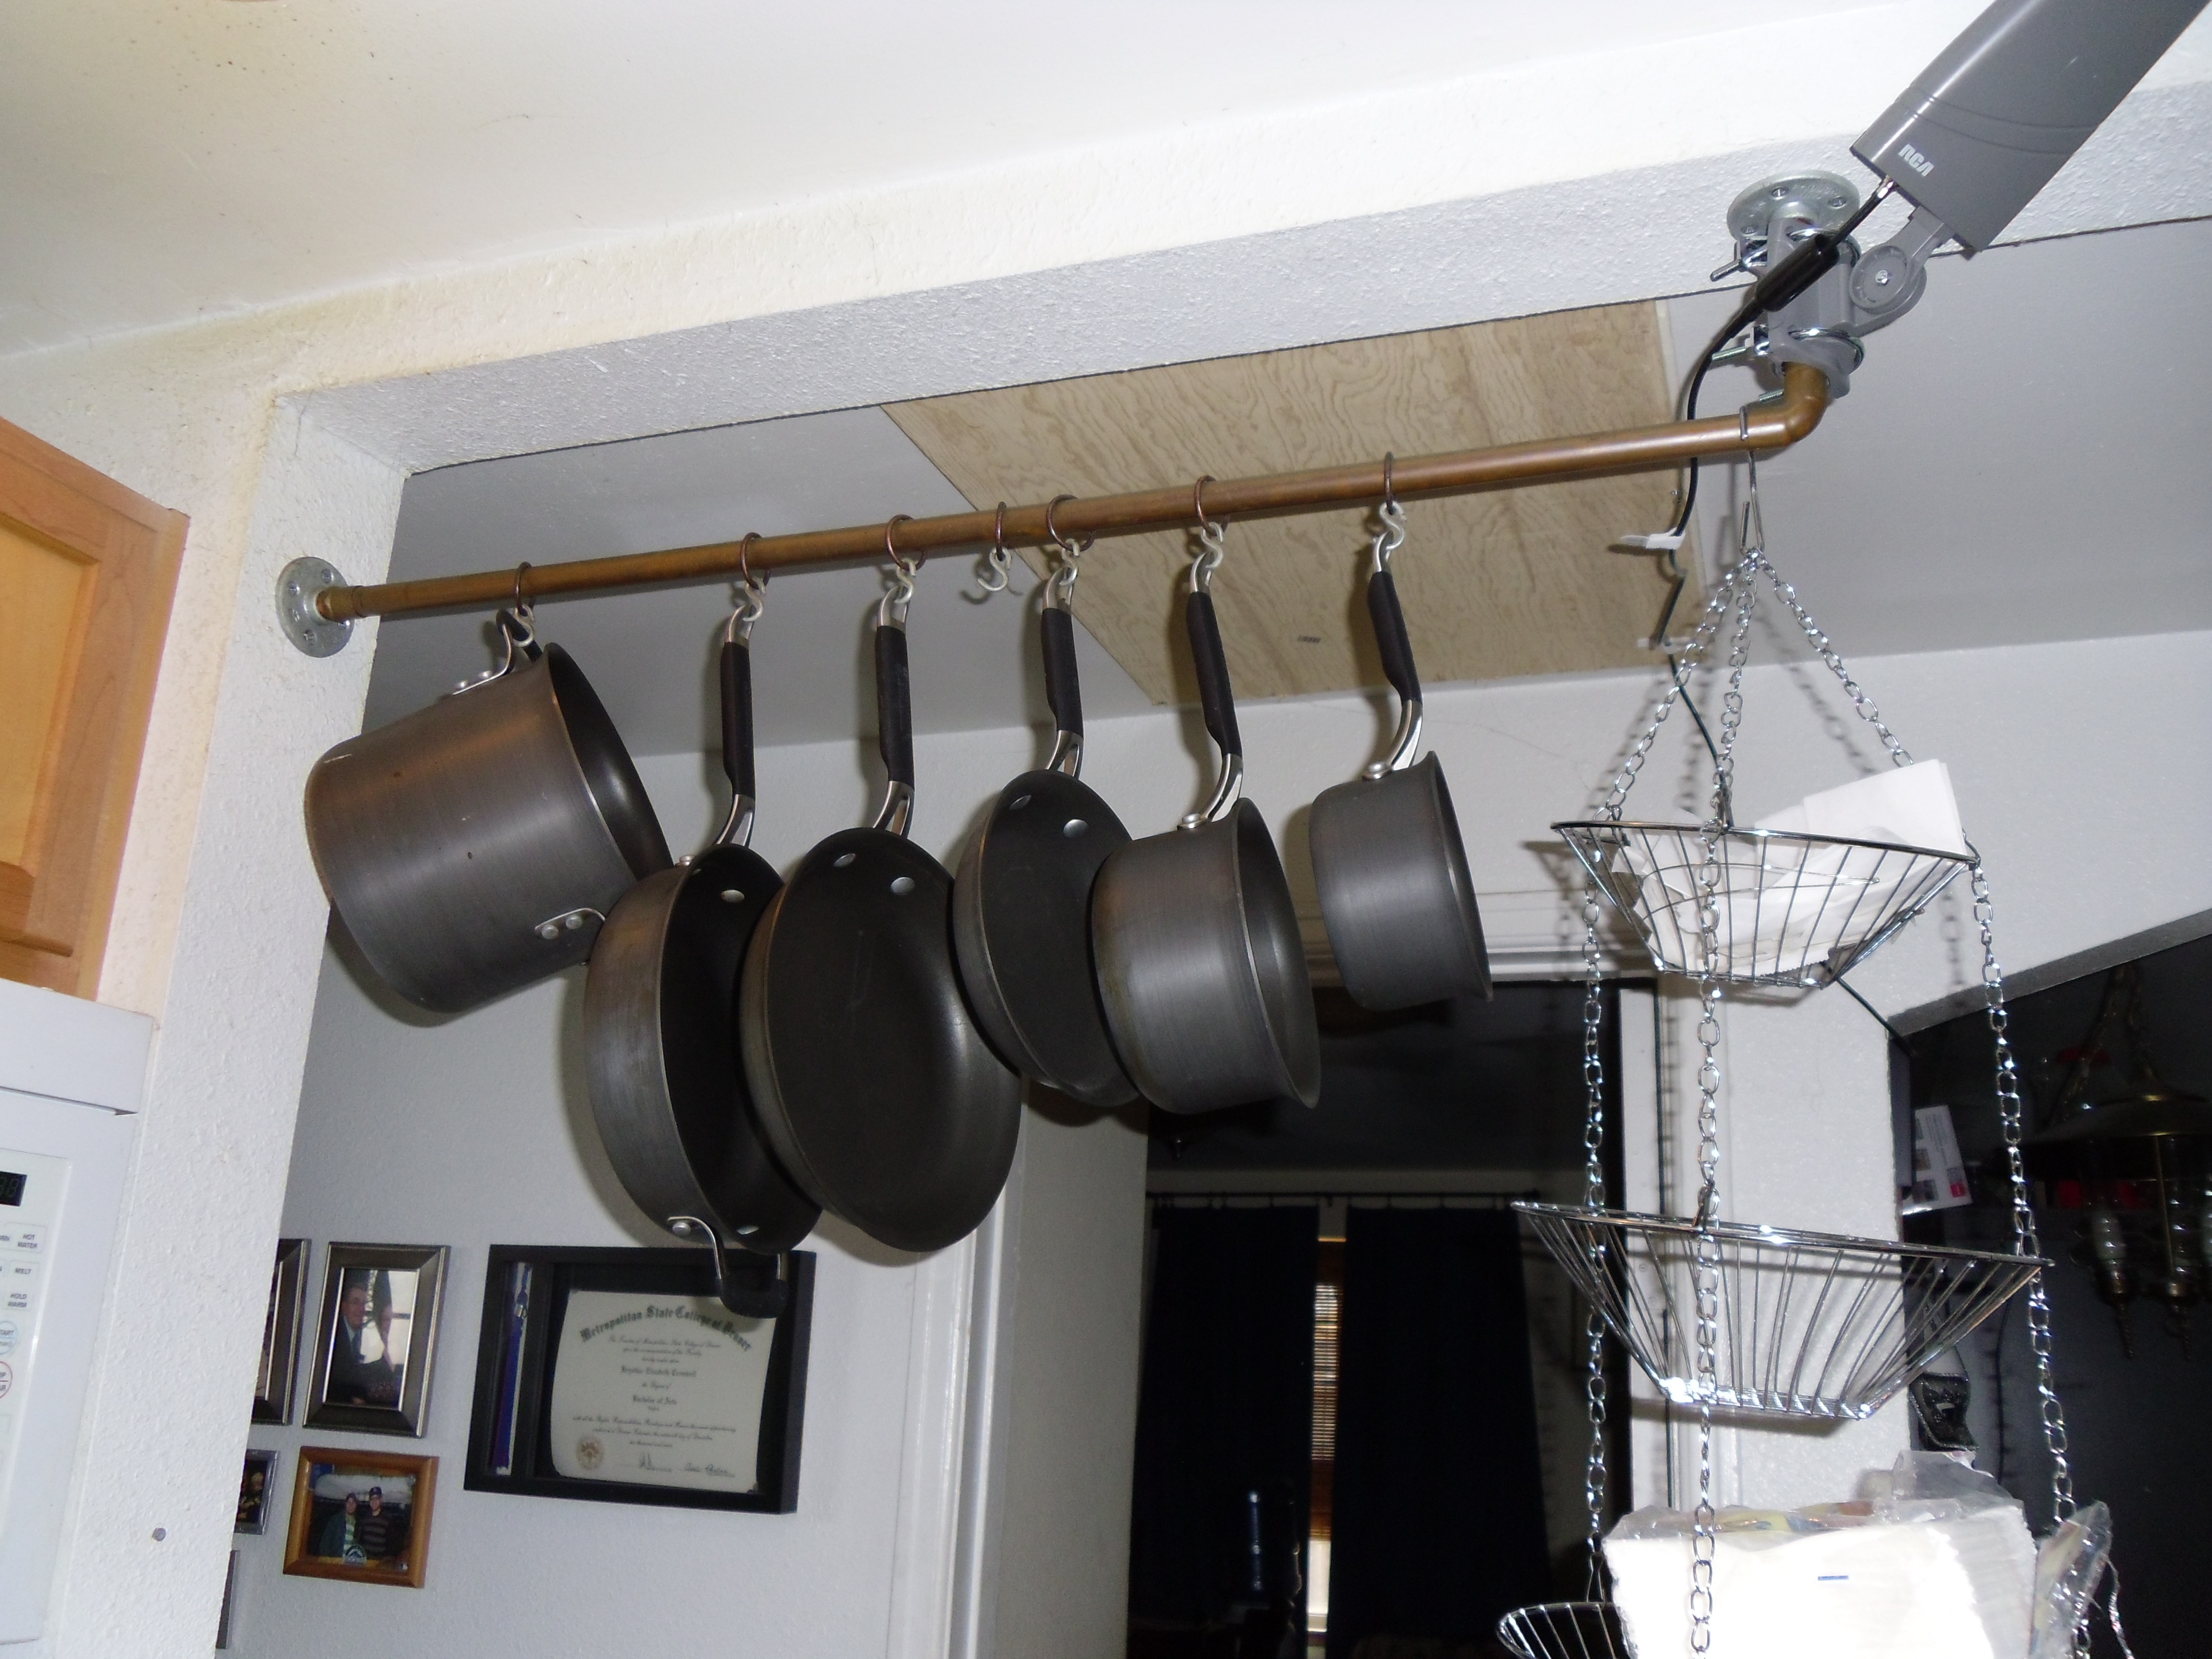 Best ideas about DIY Hanging Pot Rack
. Save or Pin DIY Pot Rack Now.